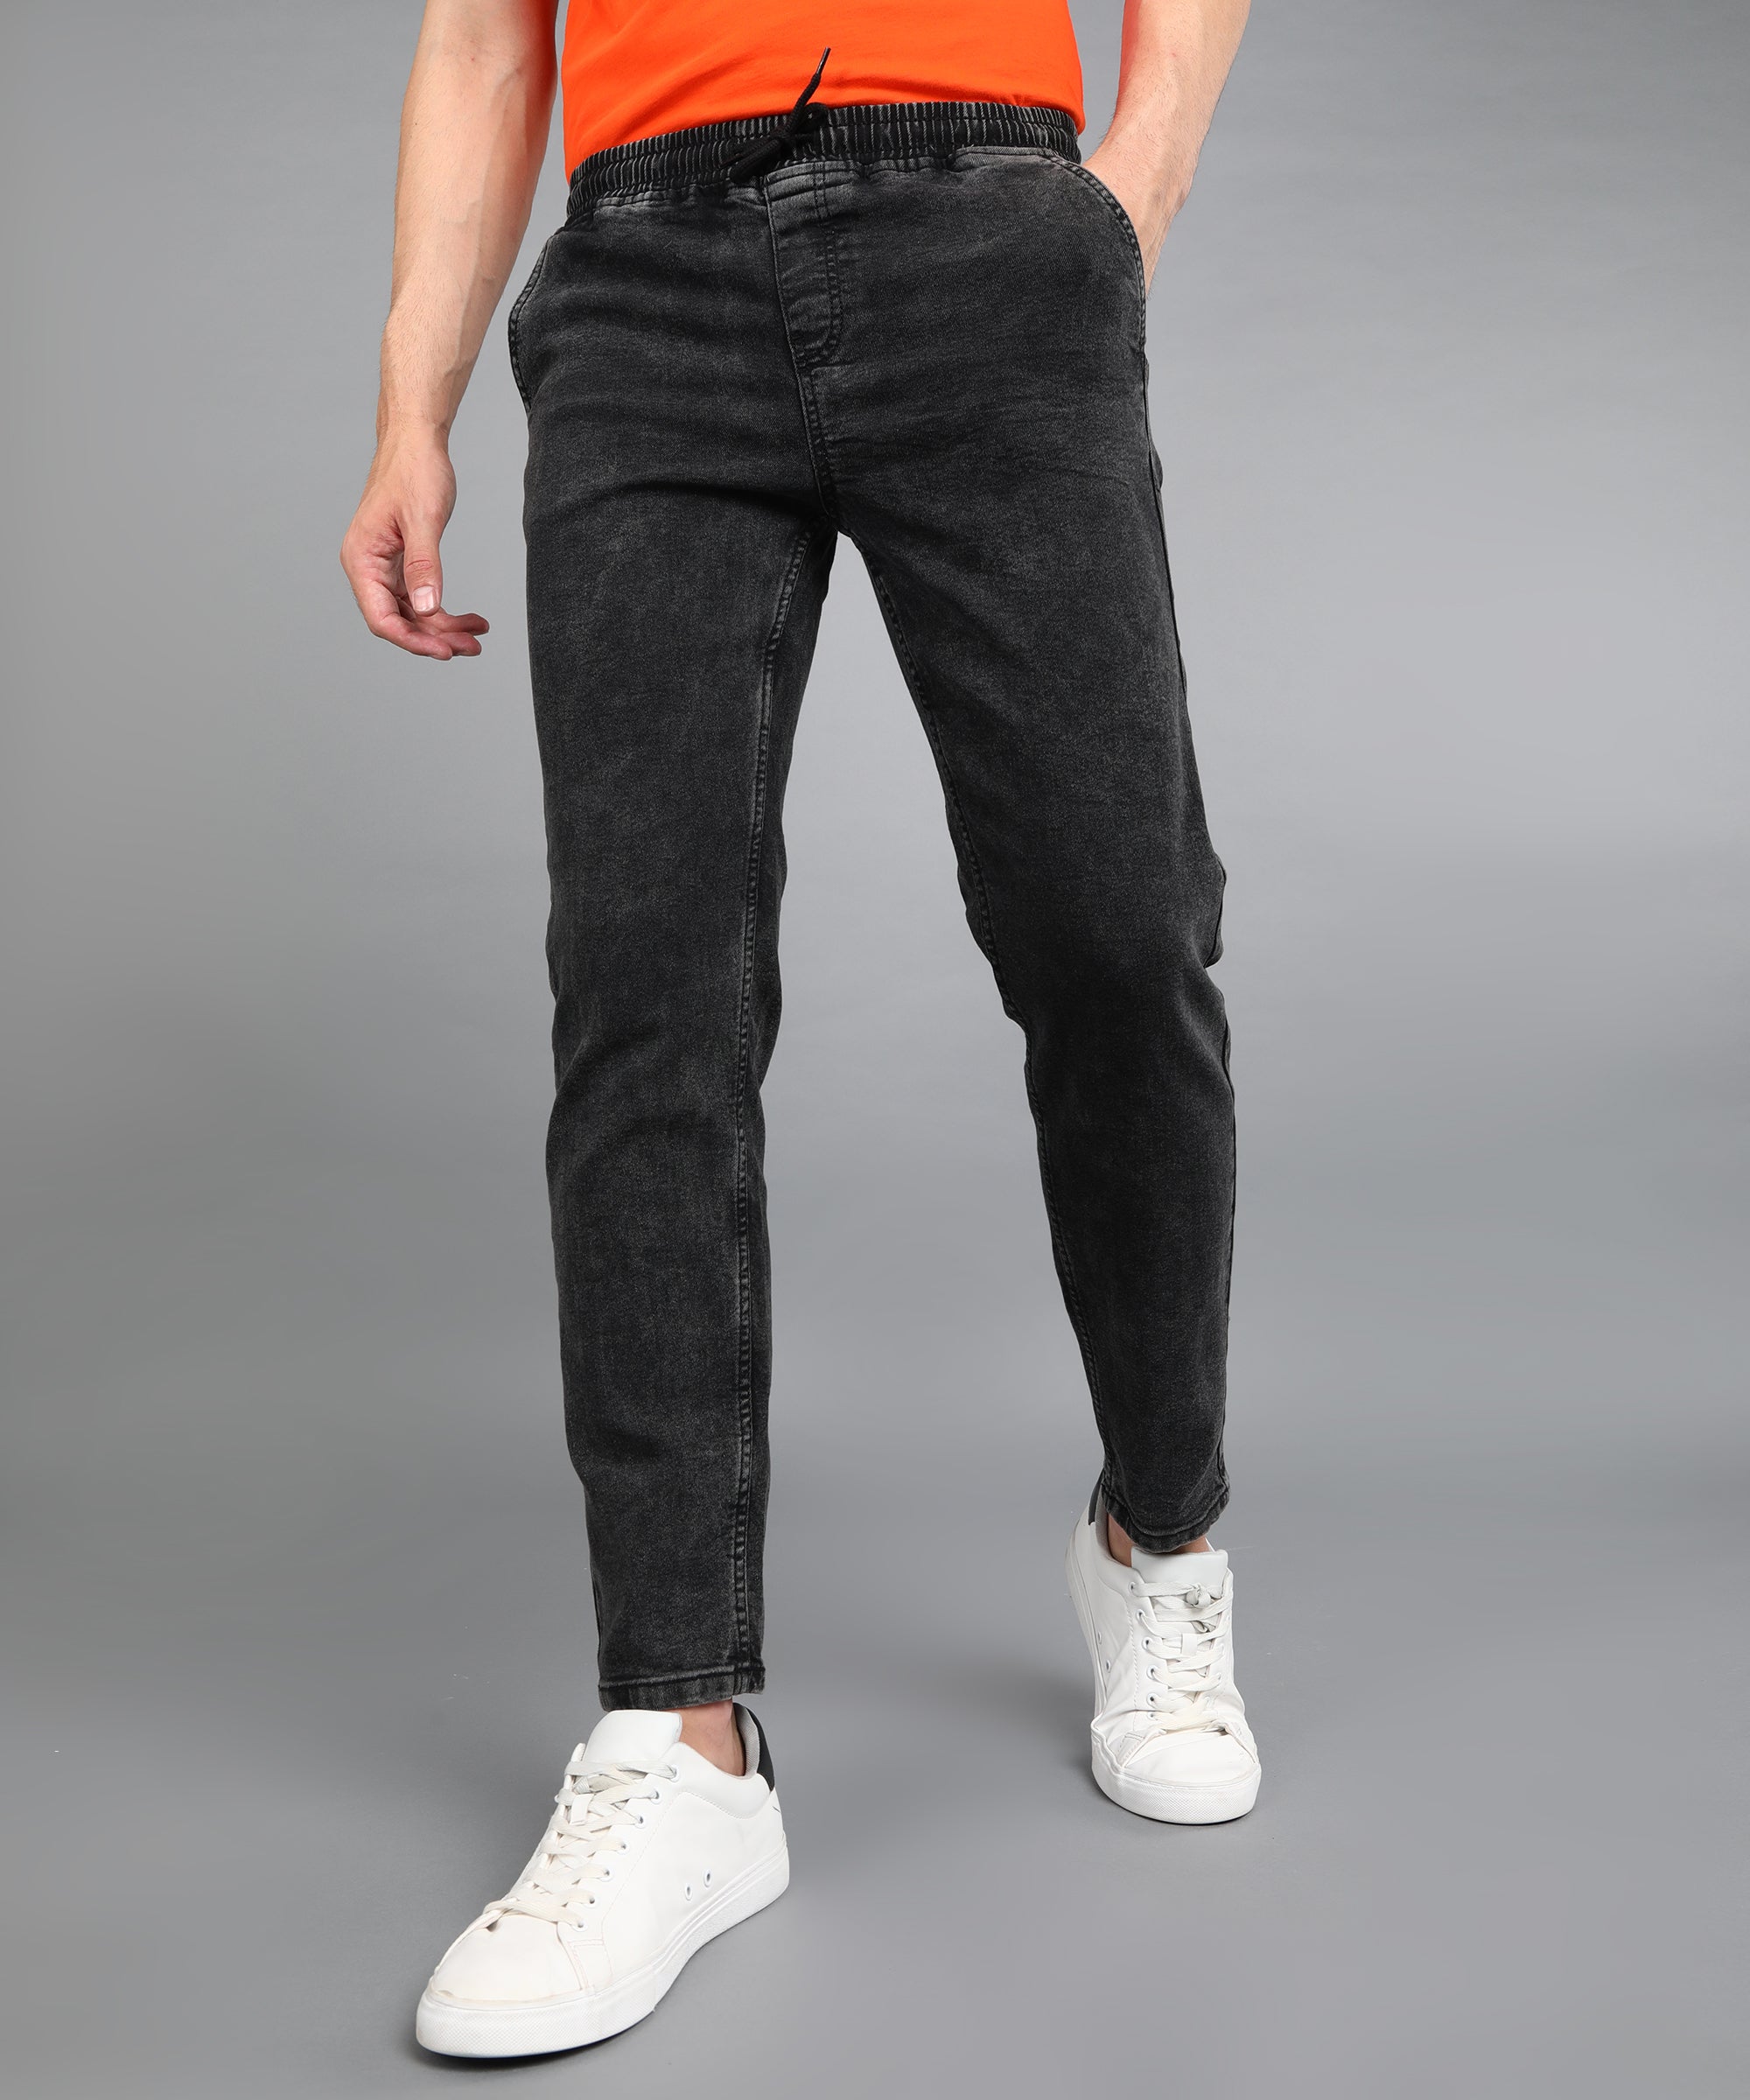 Men's Charcoal Black Regular Fit Washed Jogger Jeans Stretchable